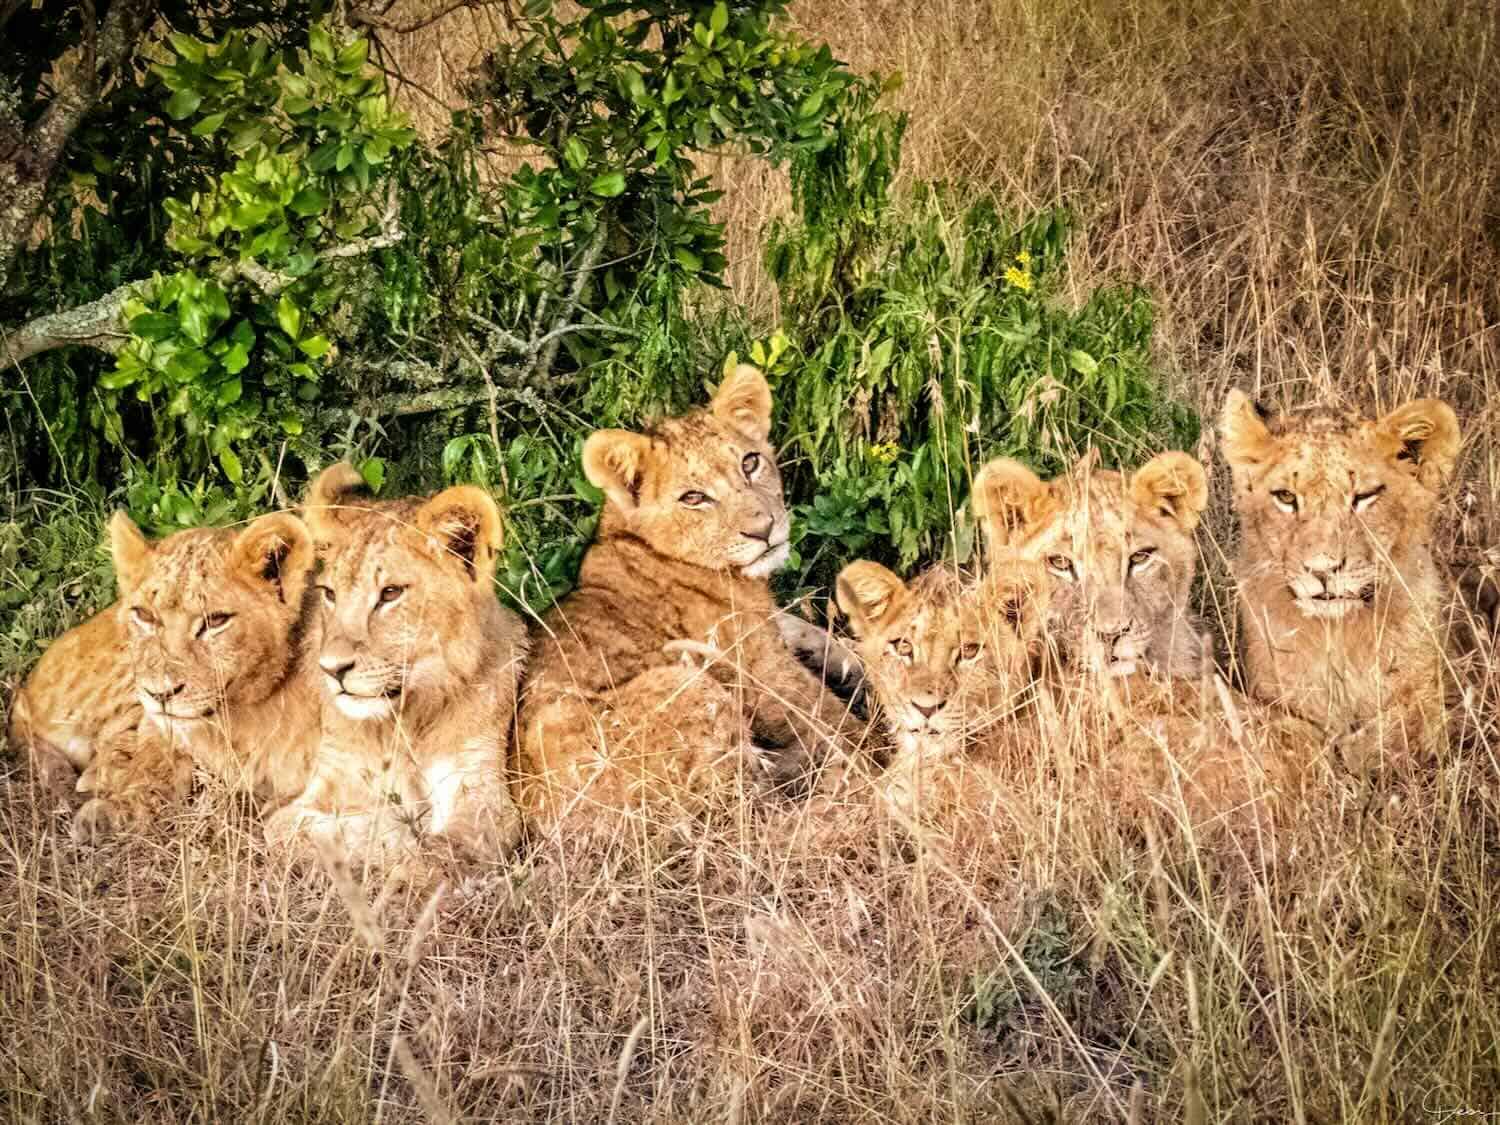 10 Days in Kenya: Safari Memories and More